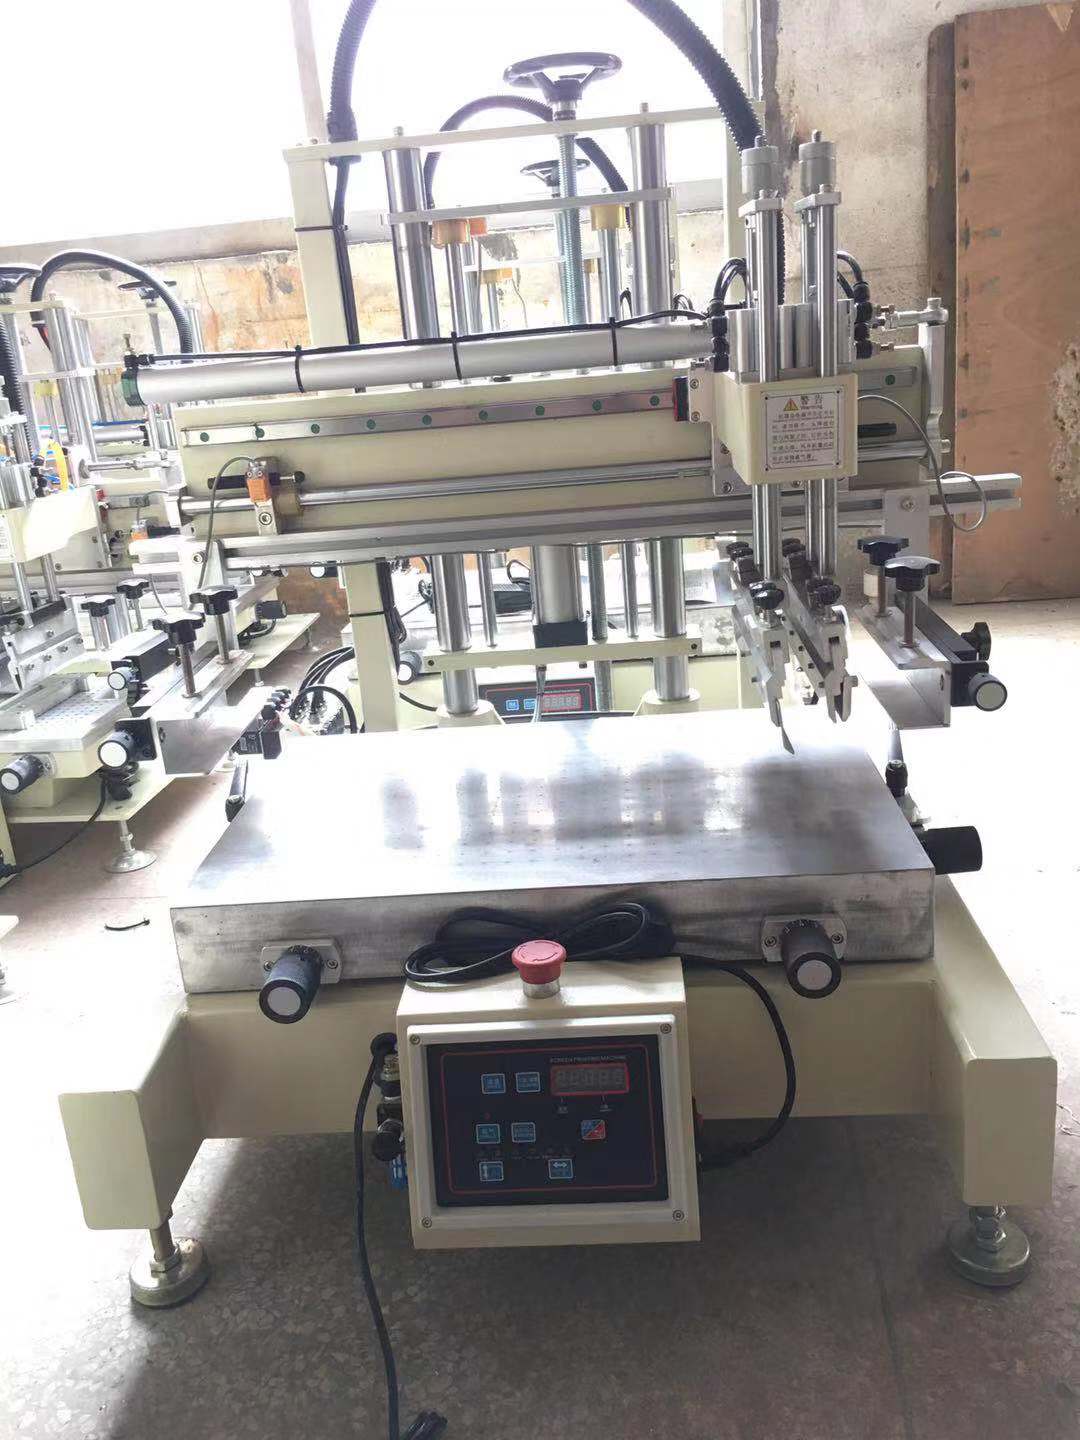 保定市小型台式丝印机曲面滚印机全自动丝网印刷机厂家